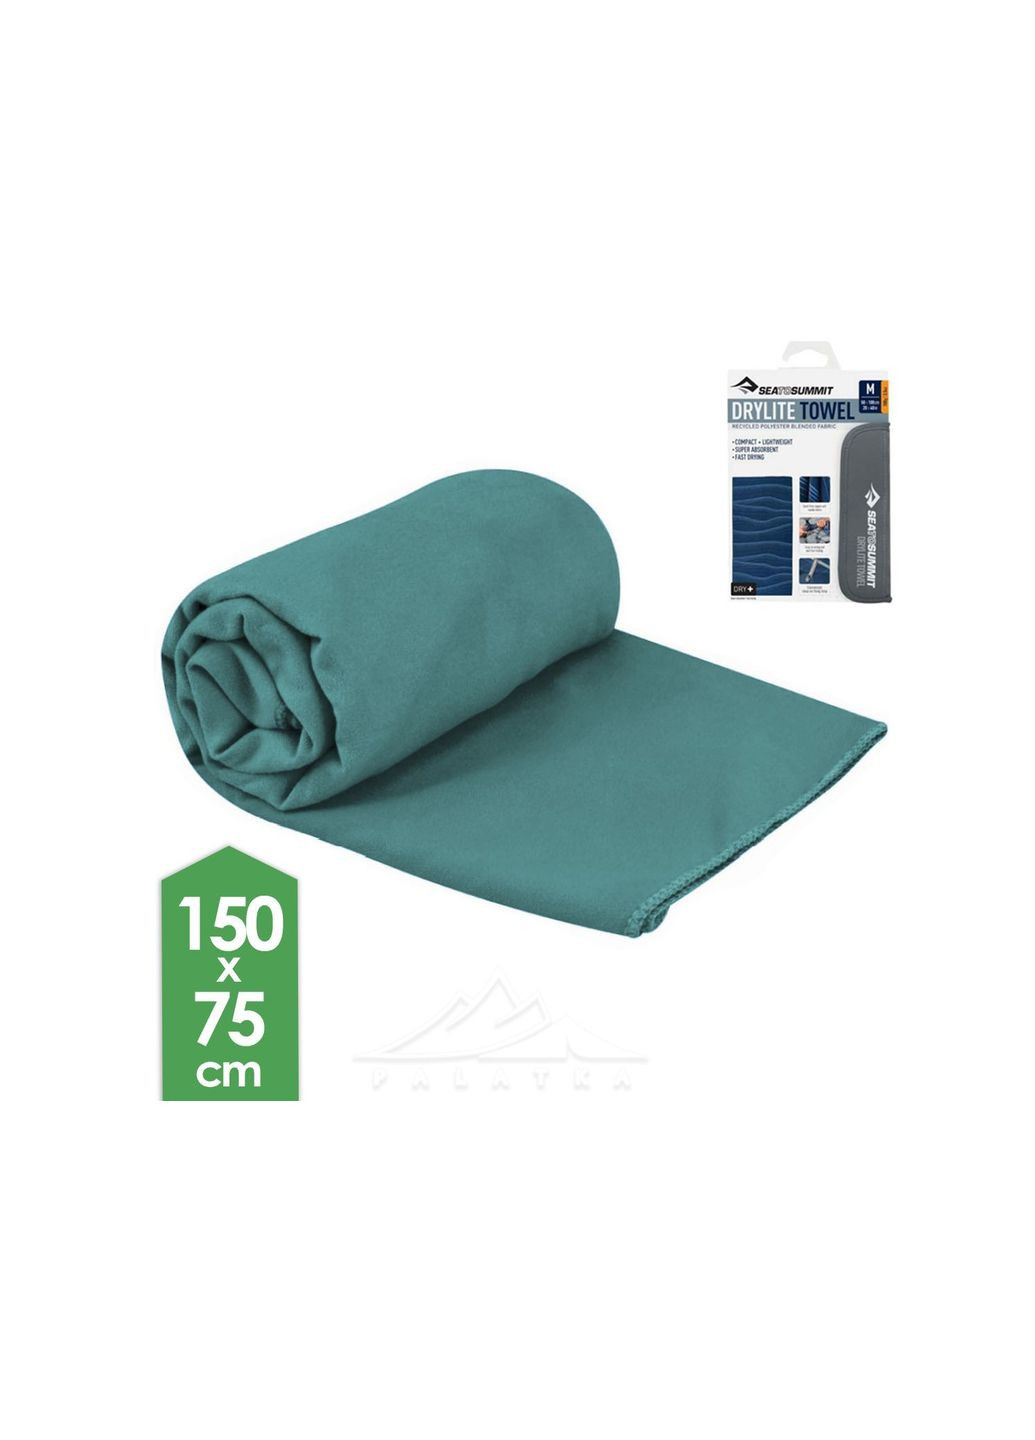 Sea To Summit полотенце drylite towel xl бирюзовый производство -